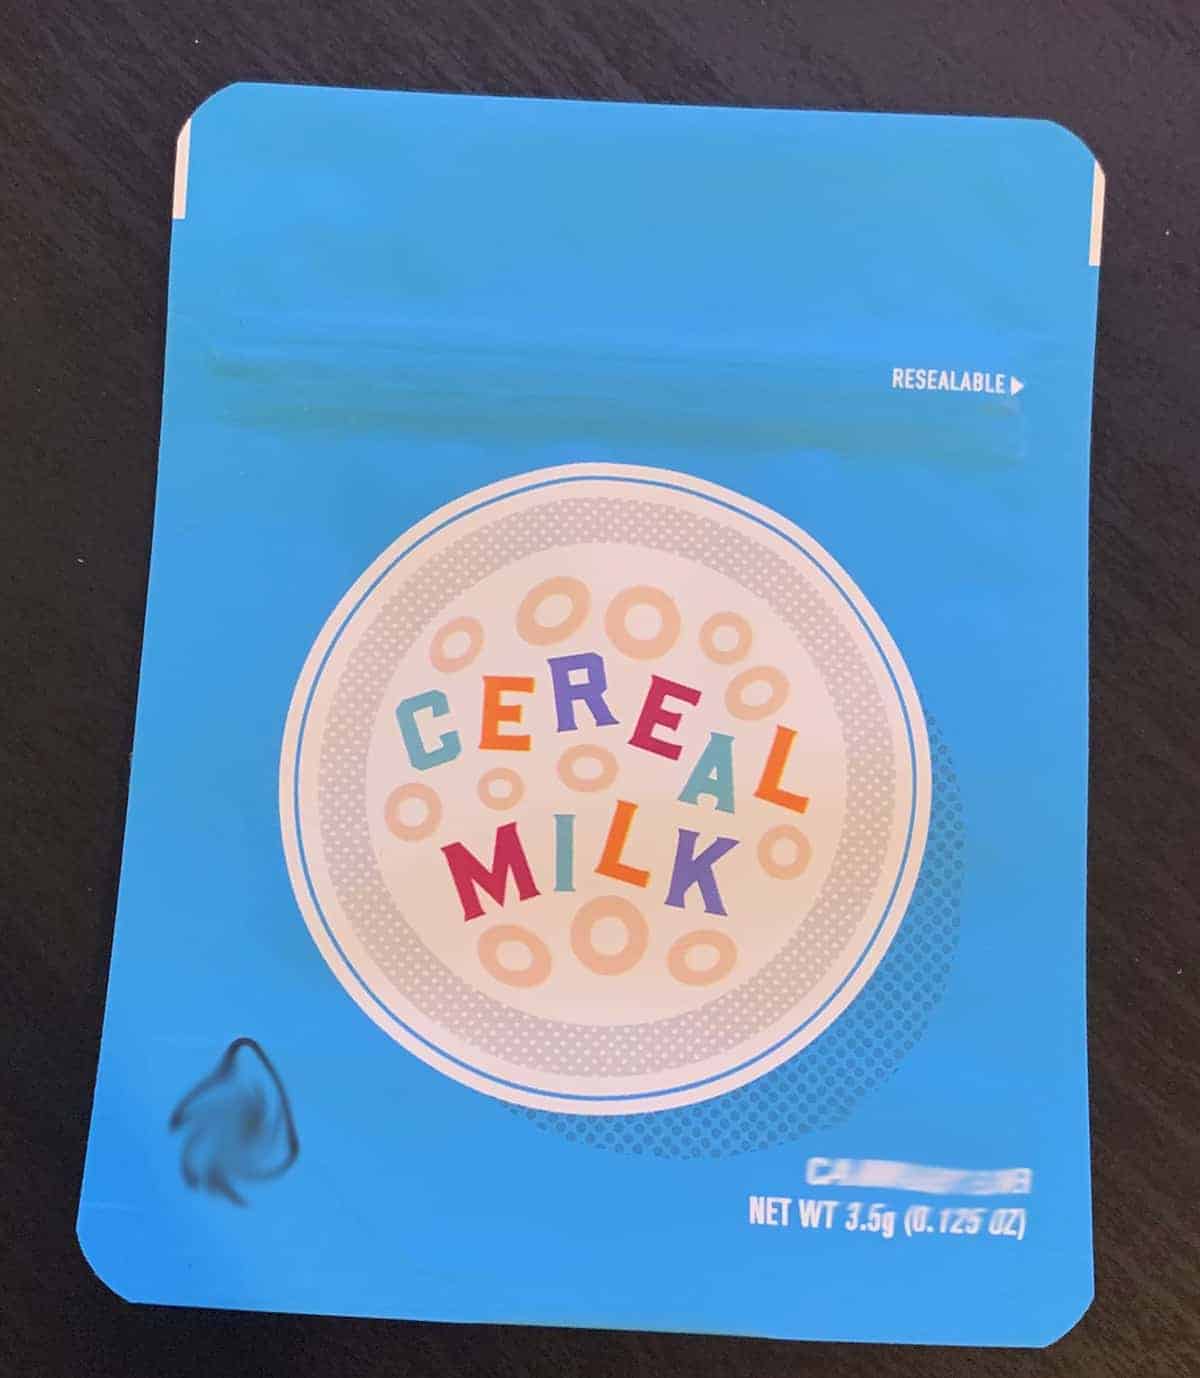 Cookies 3.5g Mylar Bags "Cereal Milk” Gas House Jokes Up Runtz 